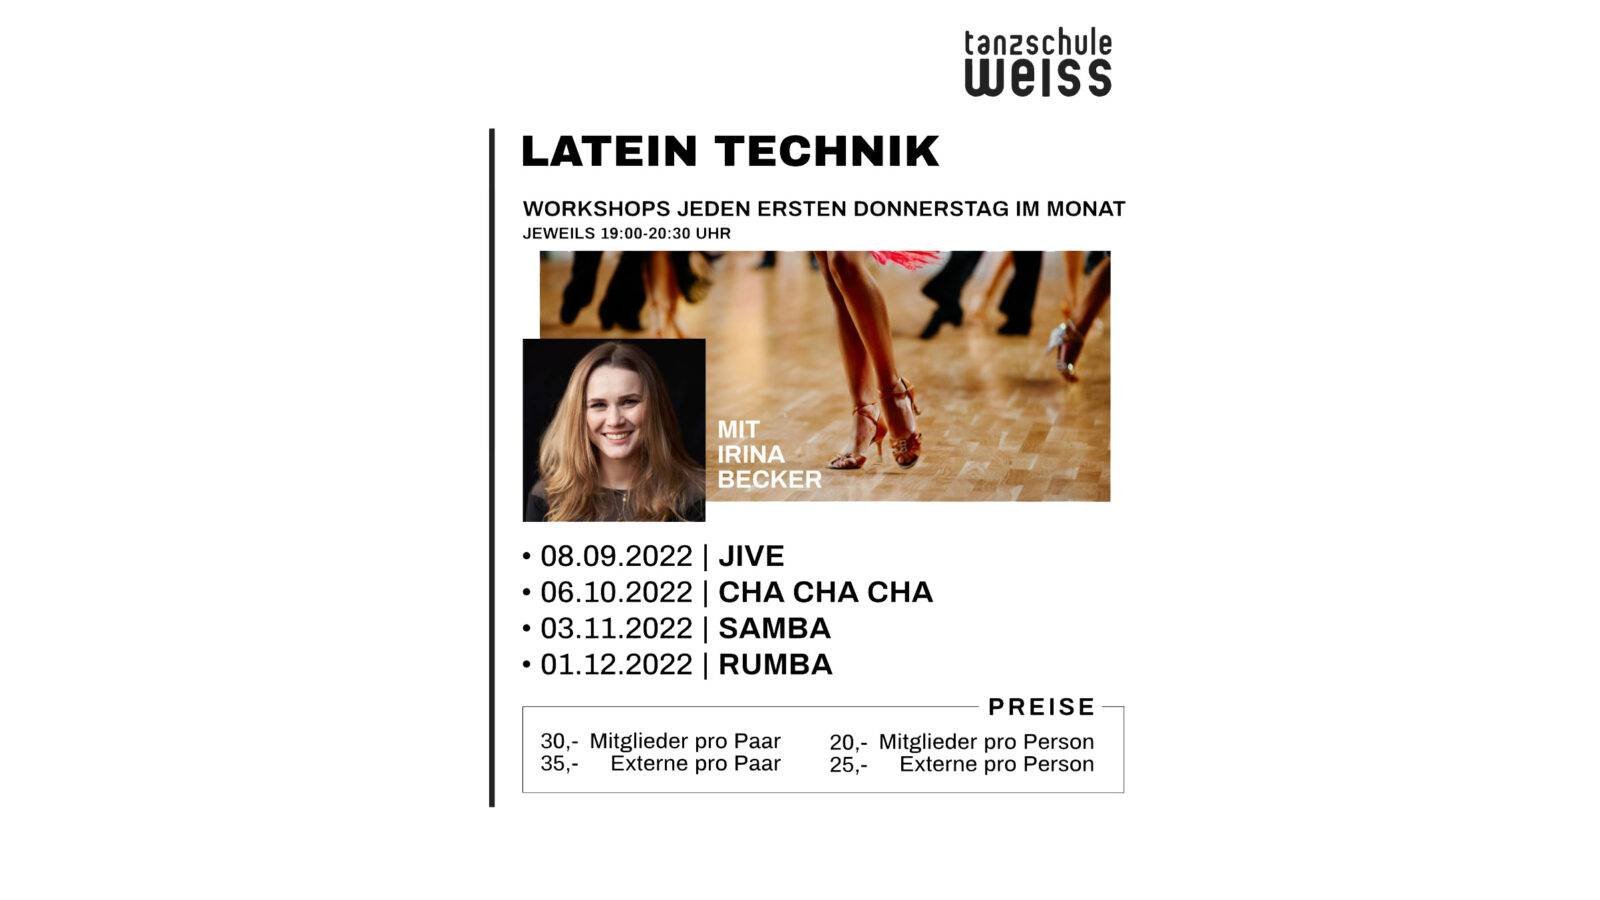 Tanzschule Weiss Latein Technik Workshops 2